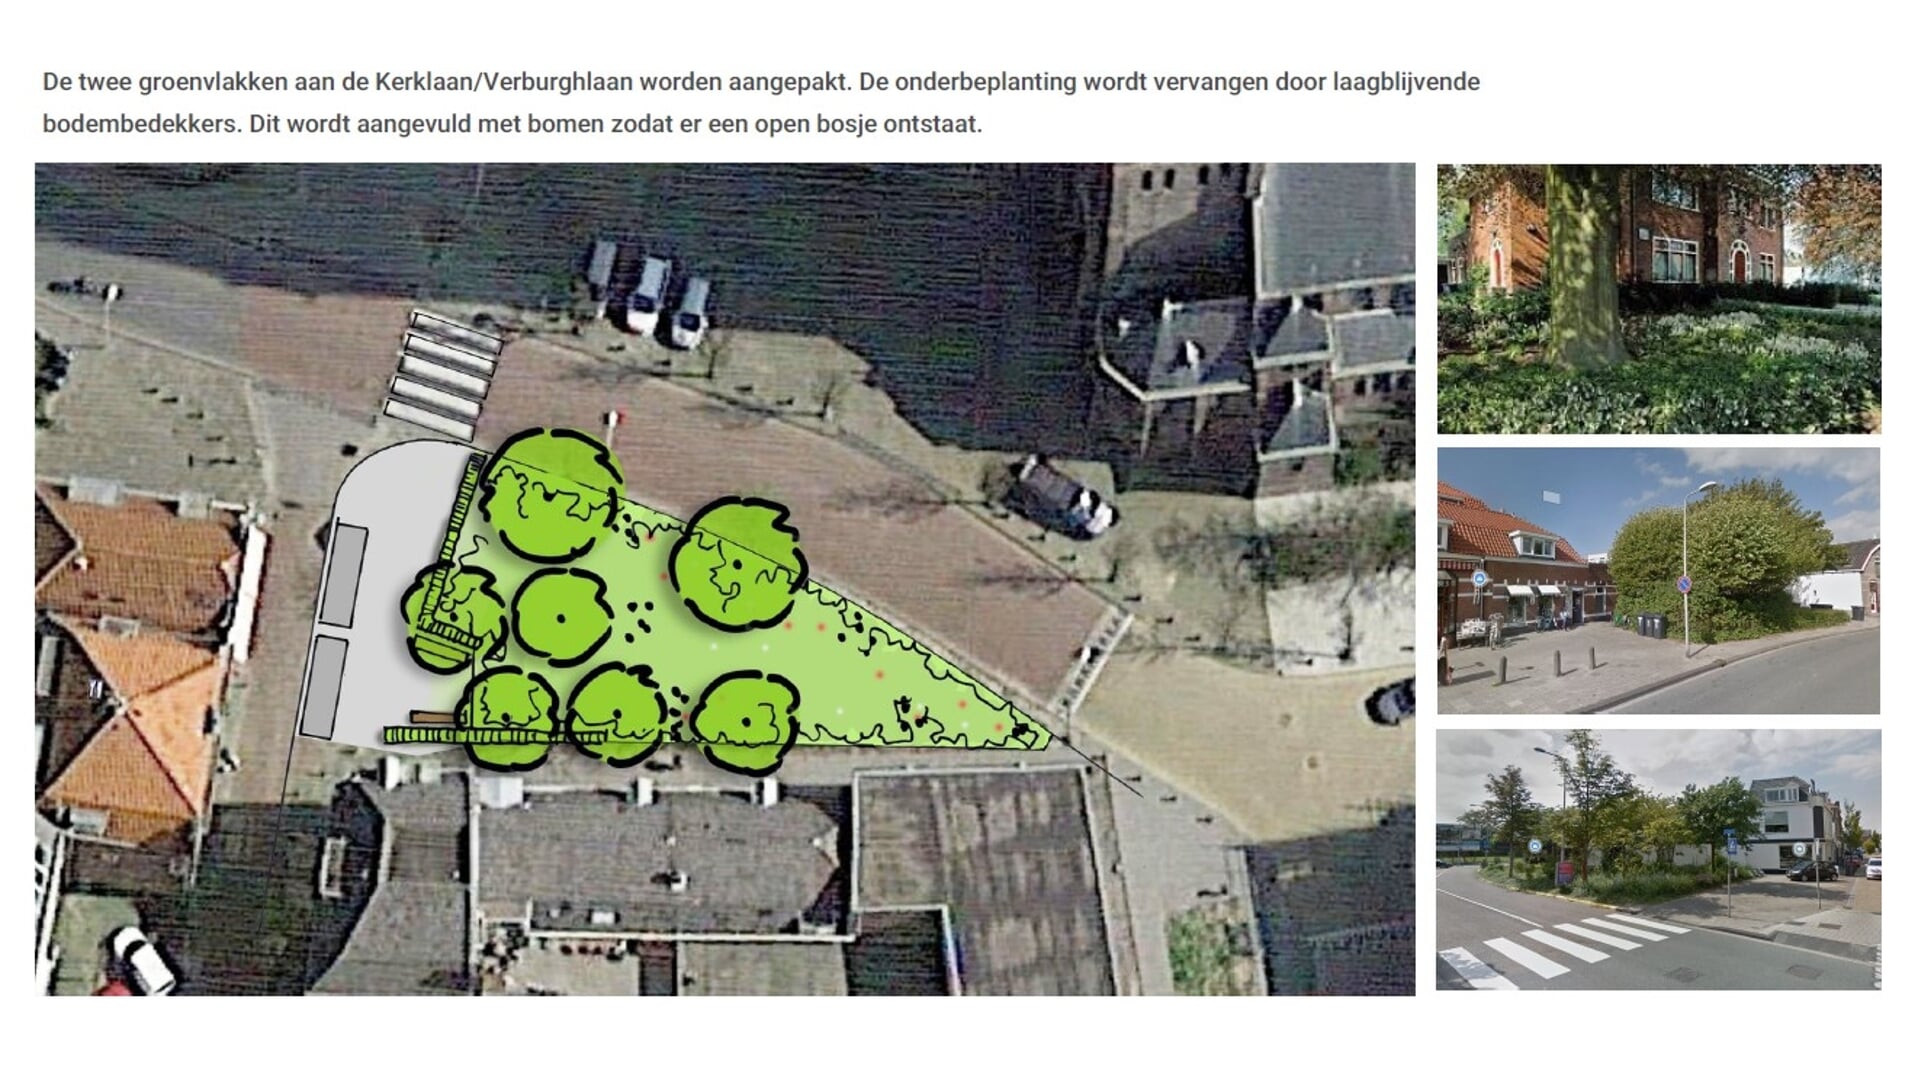  Foto’s locatie Kerklaan/Verburchlaan/Voorstraat uit publicatie 'Vergroenen Centra Westland'.